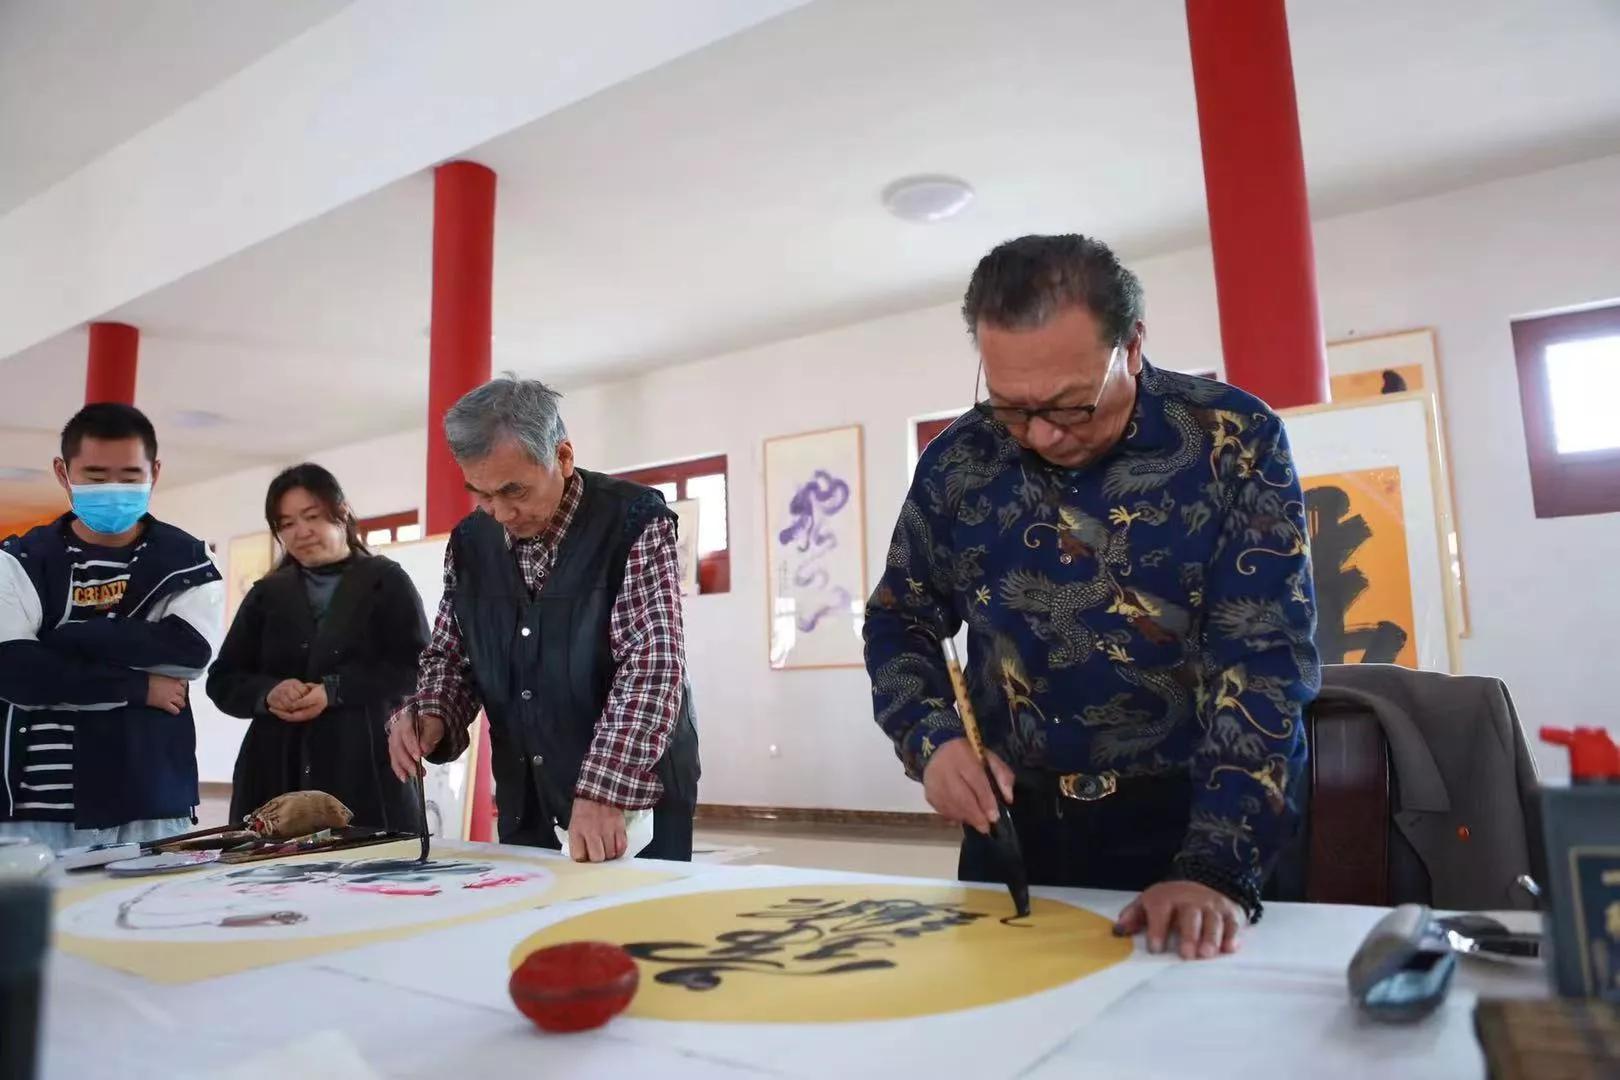 青岛龙山书画院举行联谊书画笔会和成立揭牌仪式